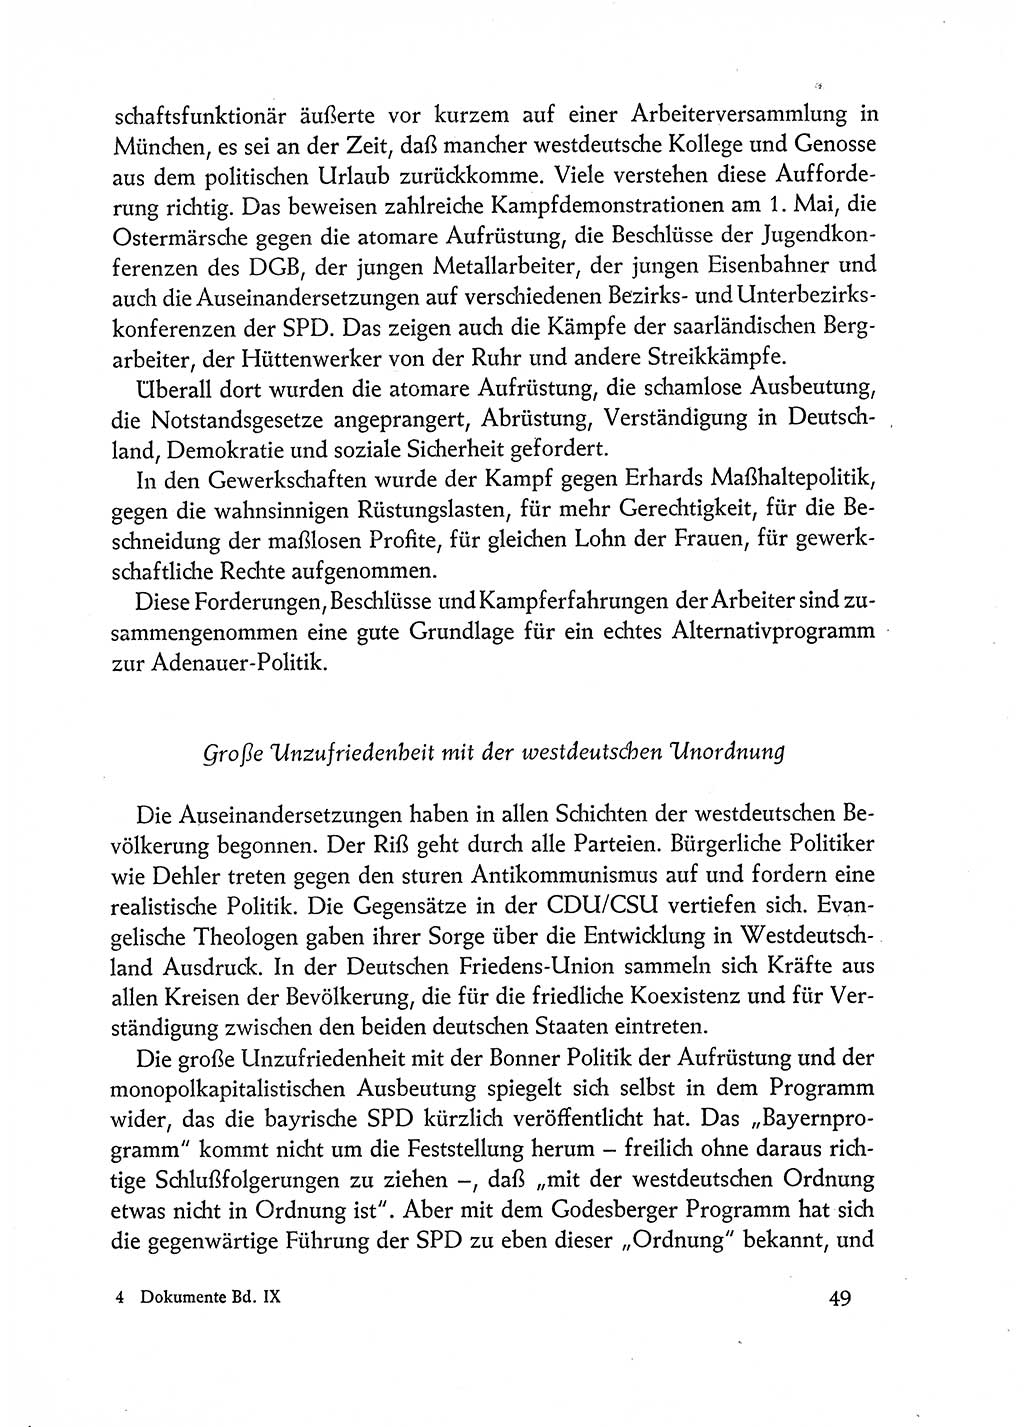 Dokumente der Sozialistischen Einheitspartei Deutschlands (SED) [Deutsche Demokratische Republik (DDR)] 1962-1963, Seite 49 (Dok. SED DDR 1962-1963, S. 49)